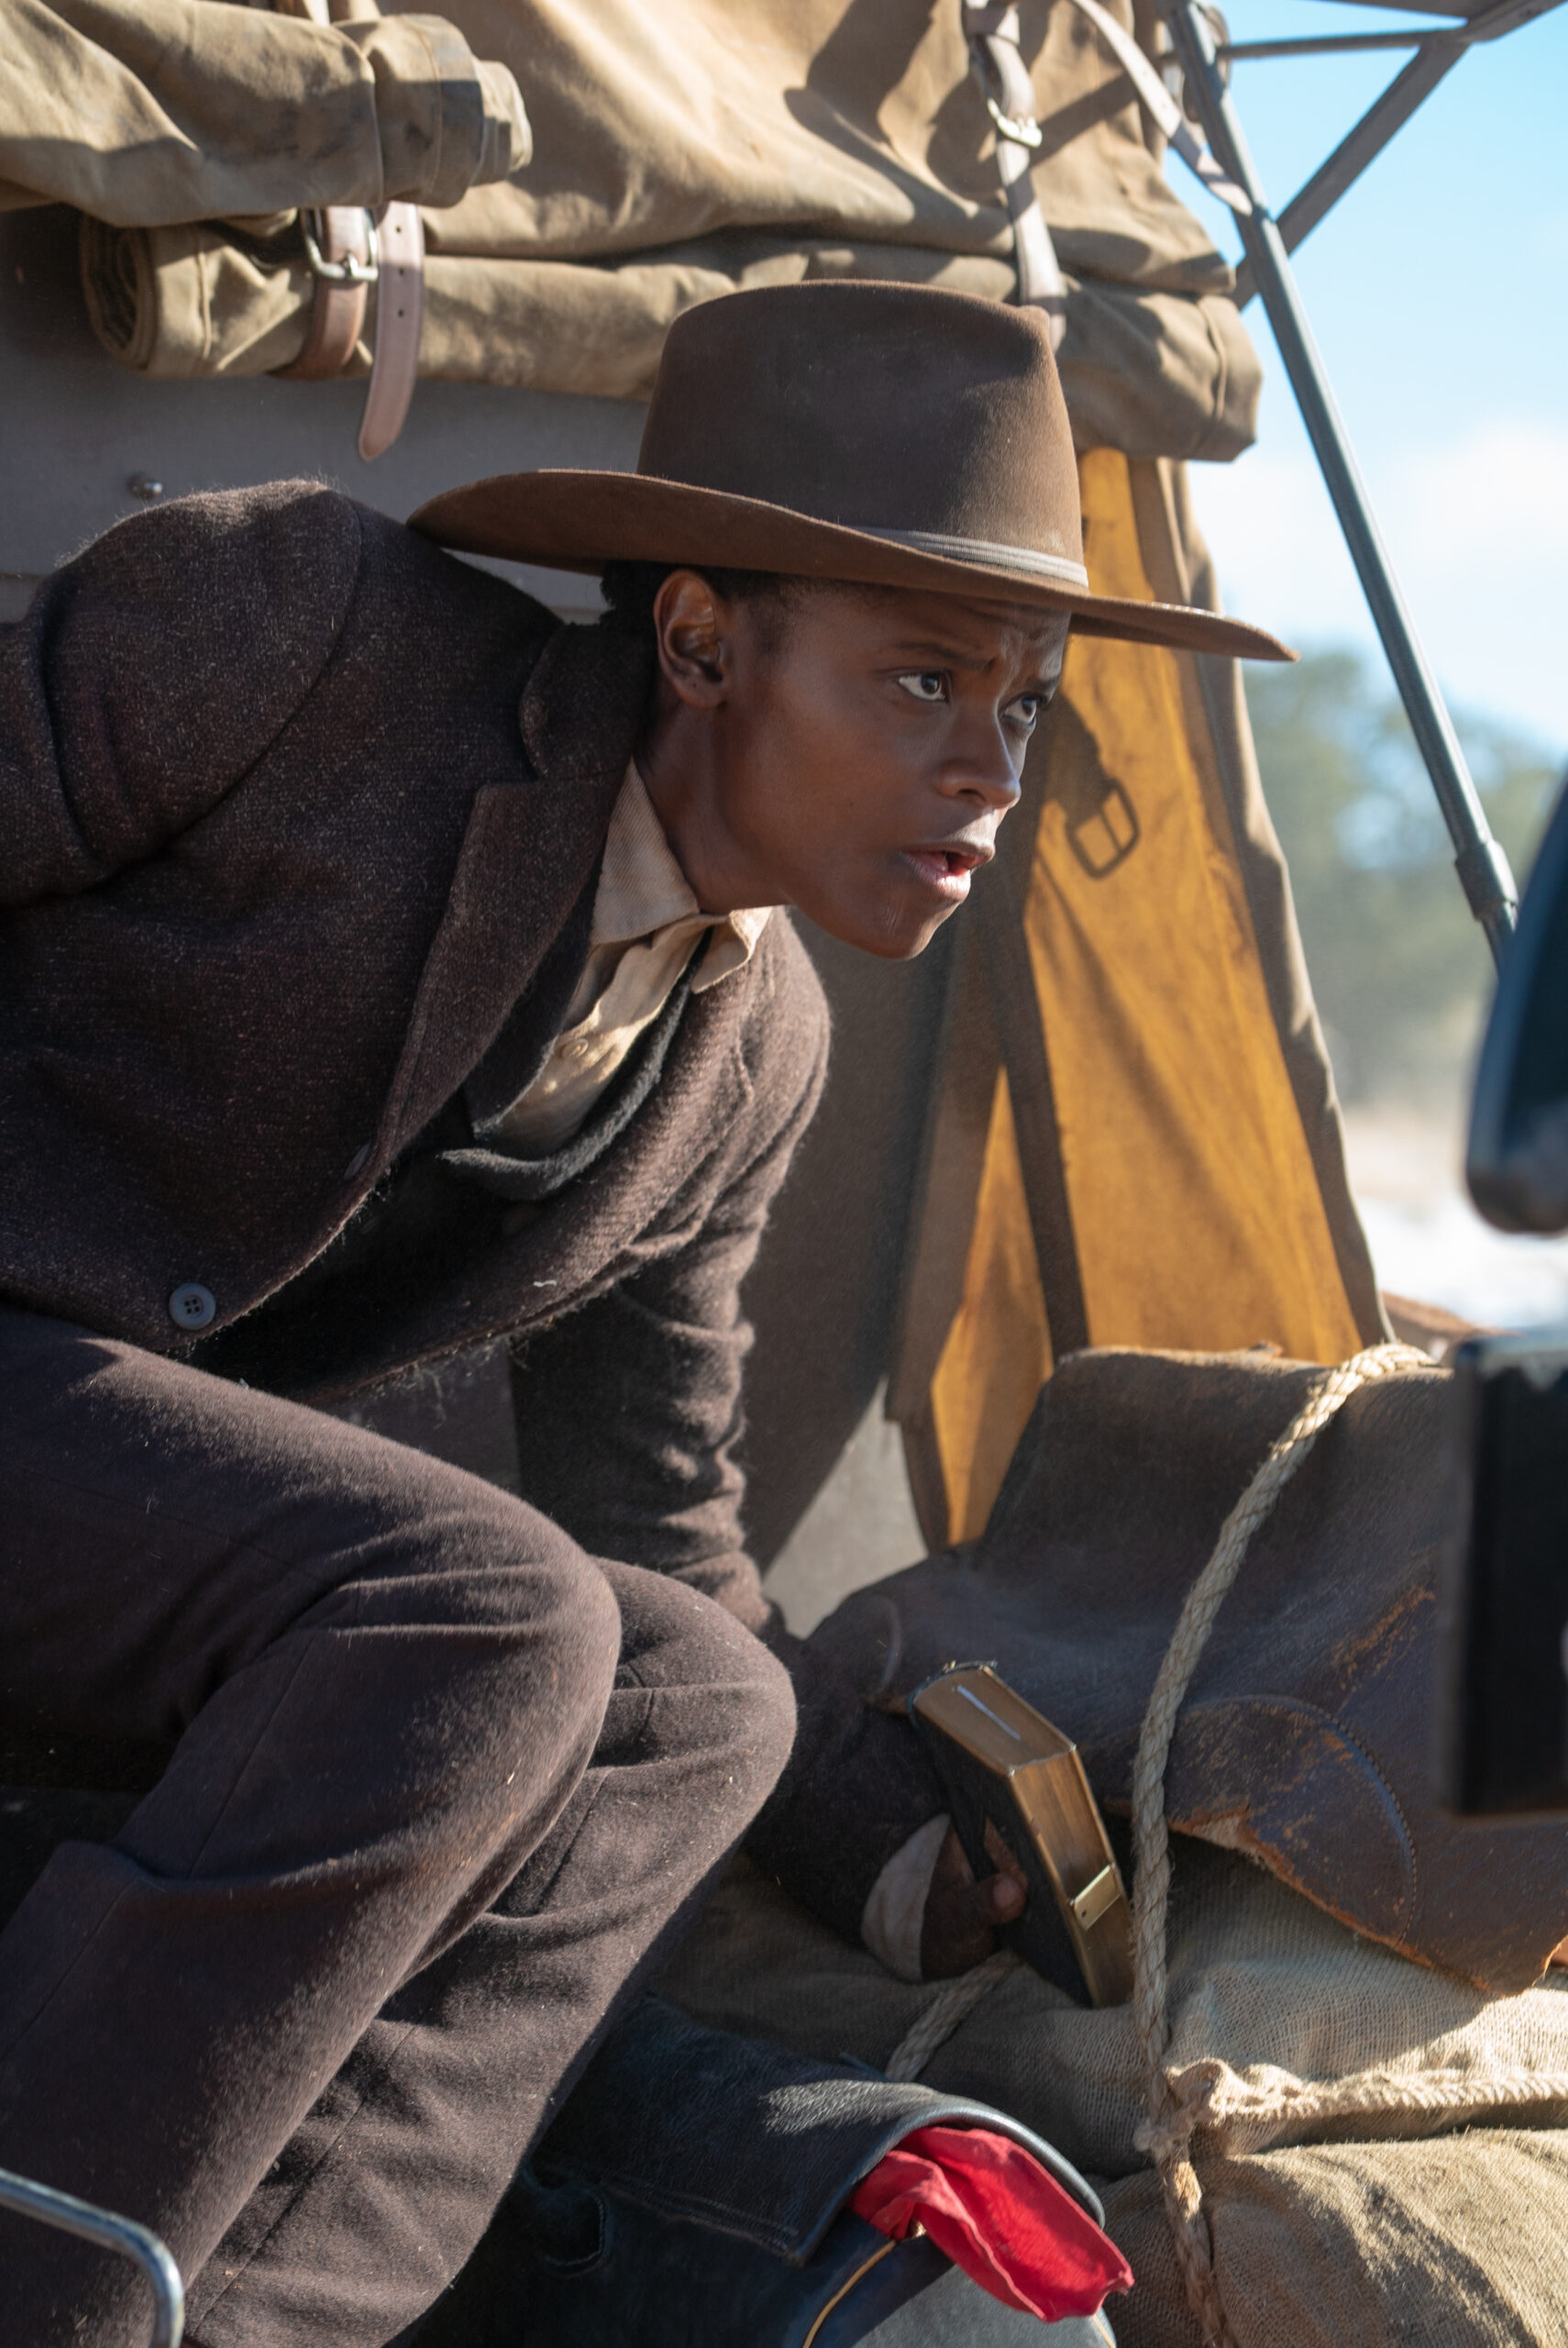 Letitia Wright e Michael K. Williams estrelam o filme de faroeste  Surrounded; Confira o trailer - Mundo Negro